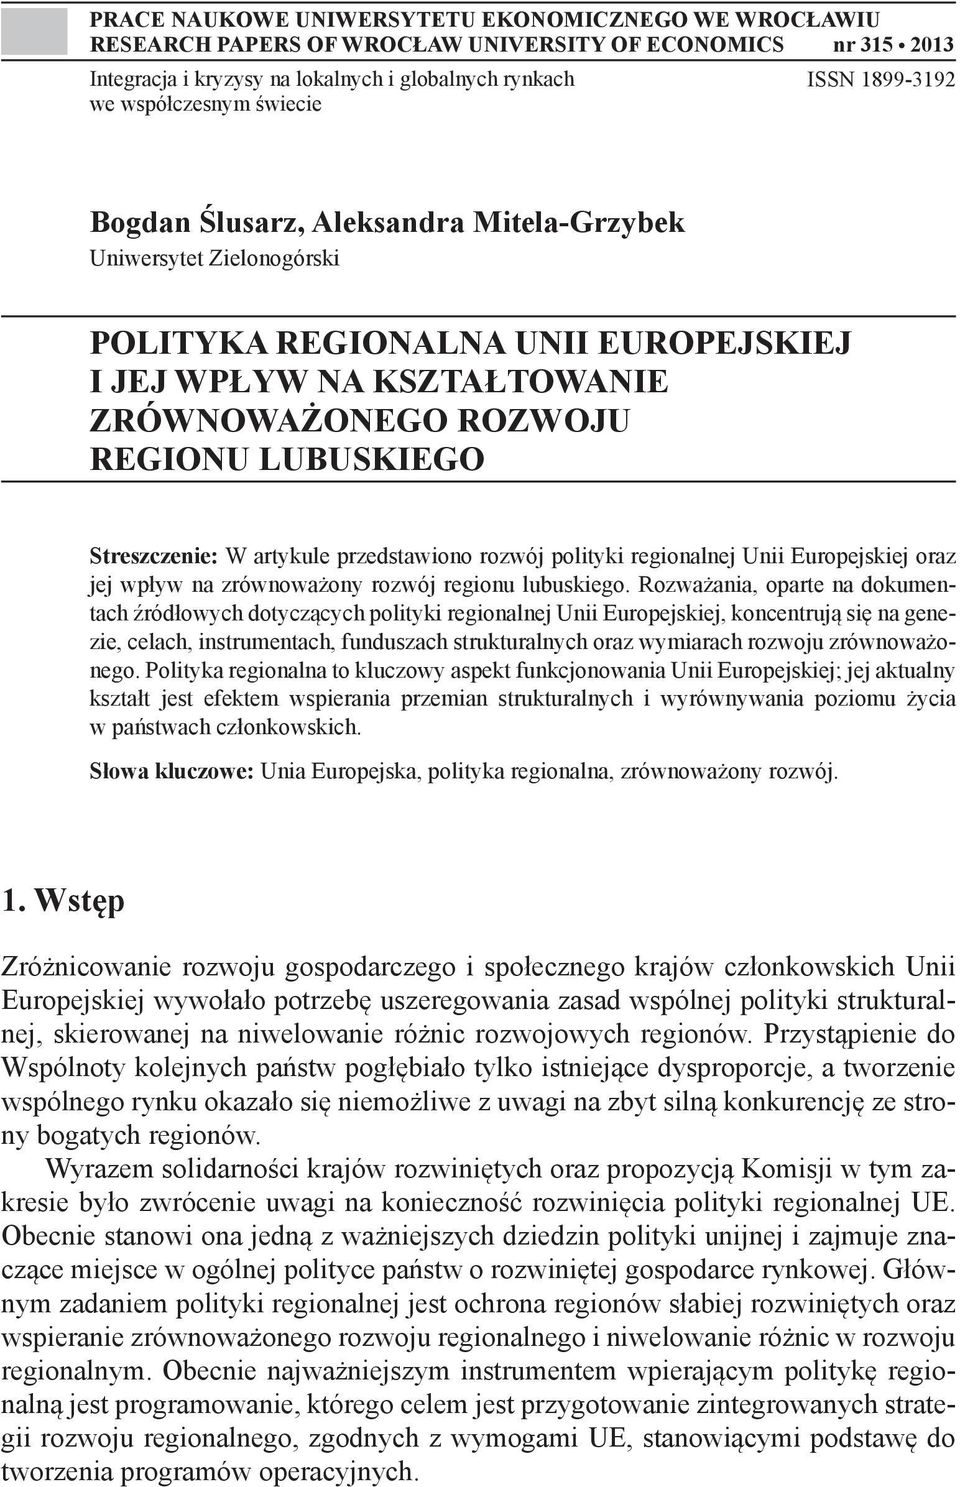 Streszczenie: W artykule przedstawiono rozwój polityki regionalnej Unii Europejskiej oraz jej wpływ na zrównoważony rozwój regionu lubuskiego.